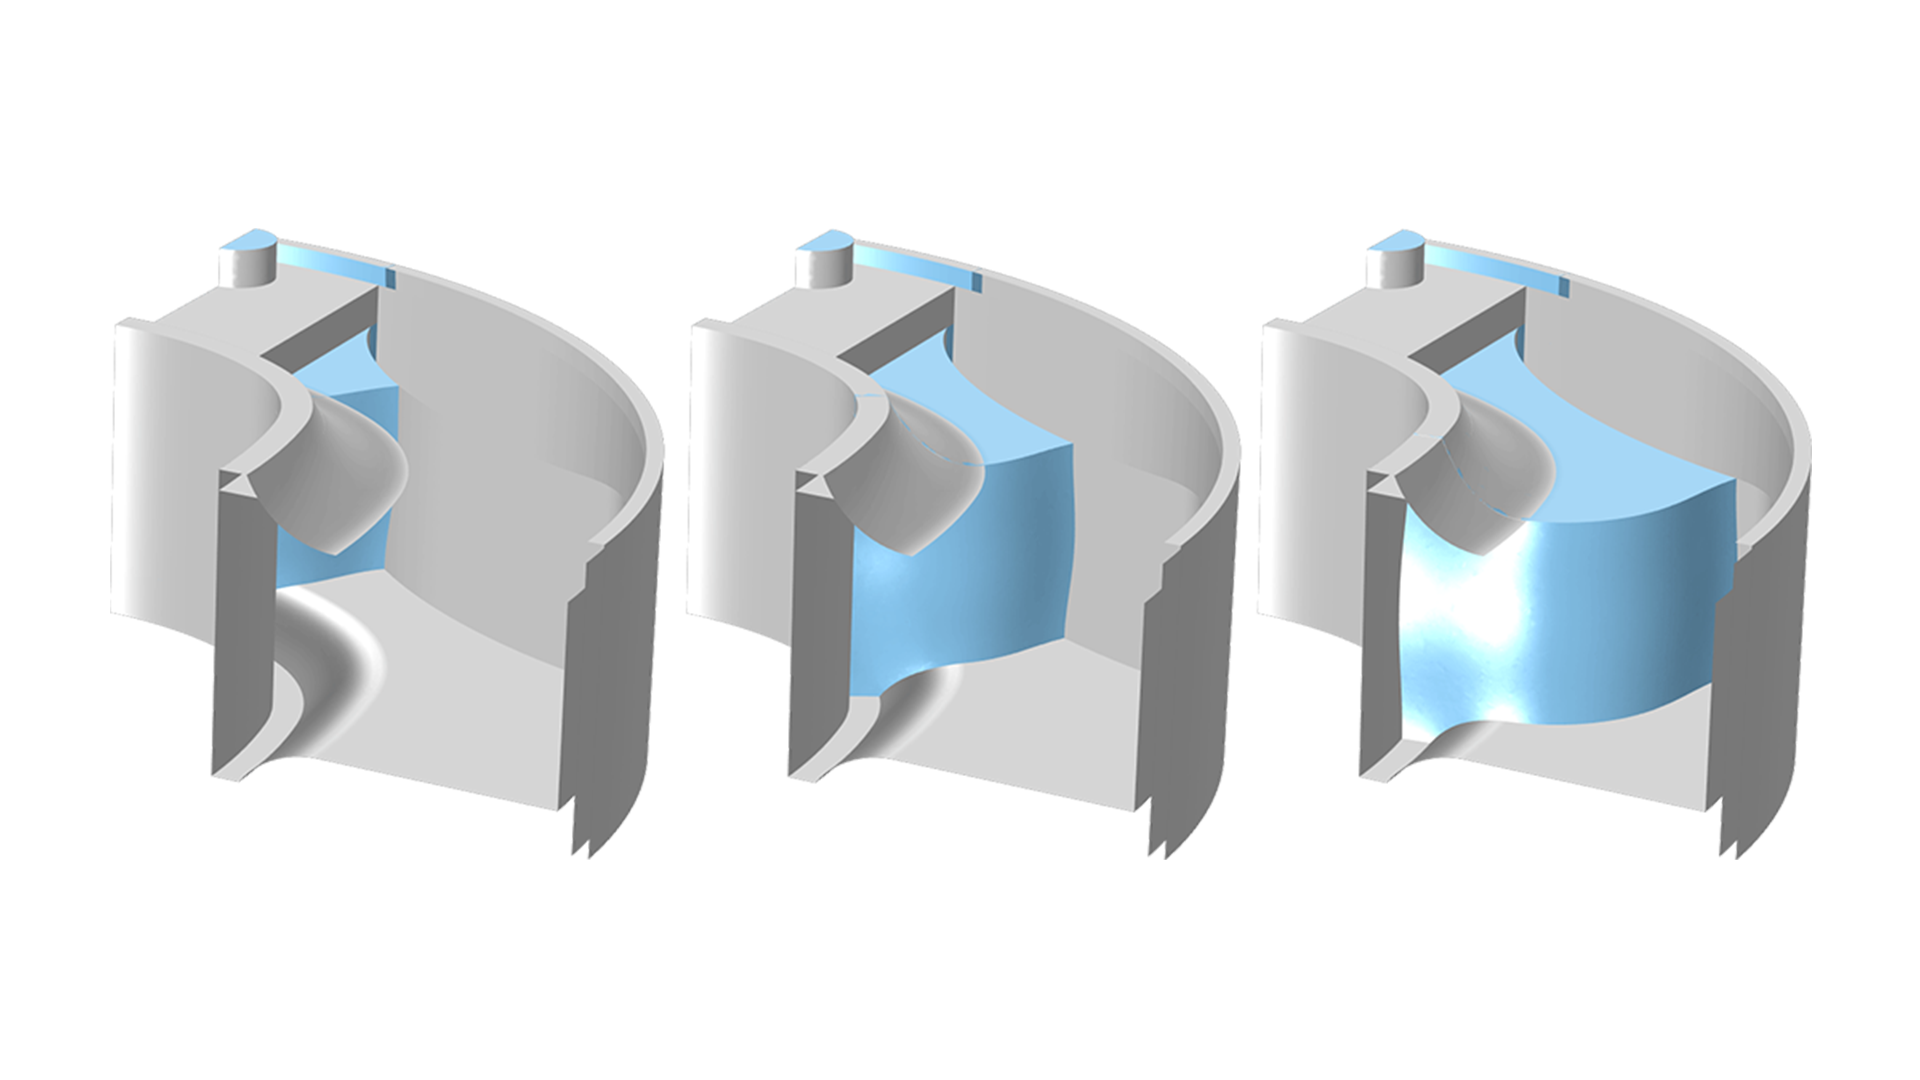 Modello di stampo mostrato tre volte con quantità crescenti di gomma in blu all'interno, dove il modello a destra è stato riempito di più.